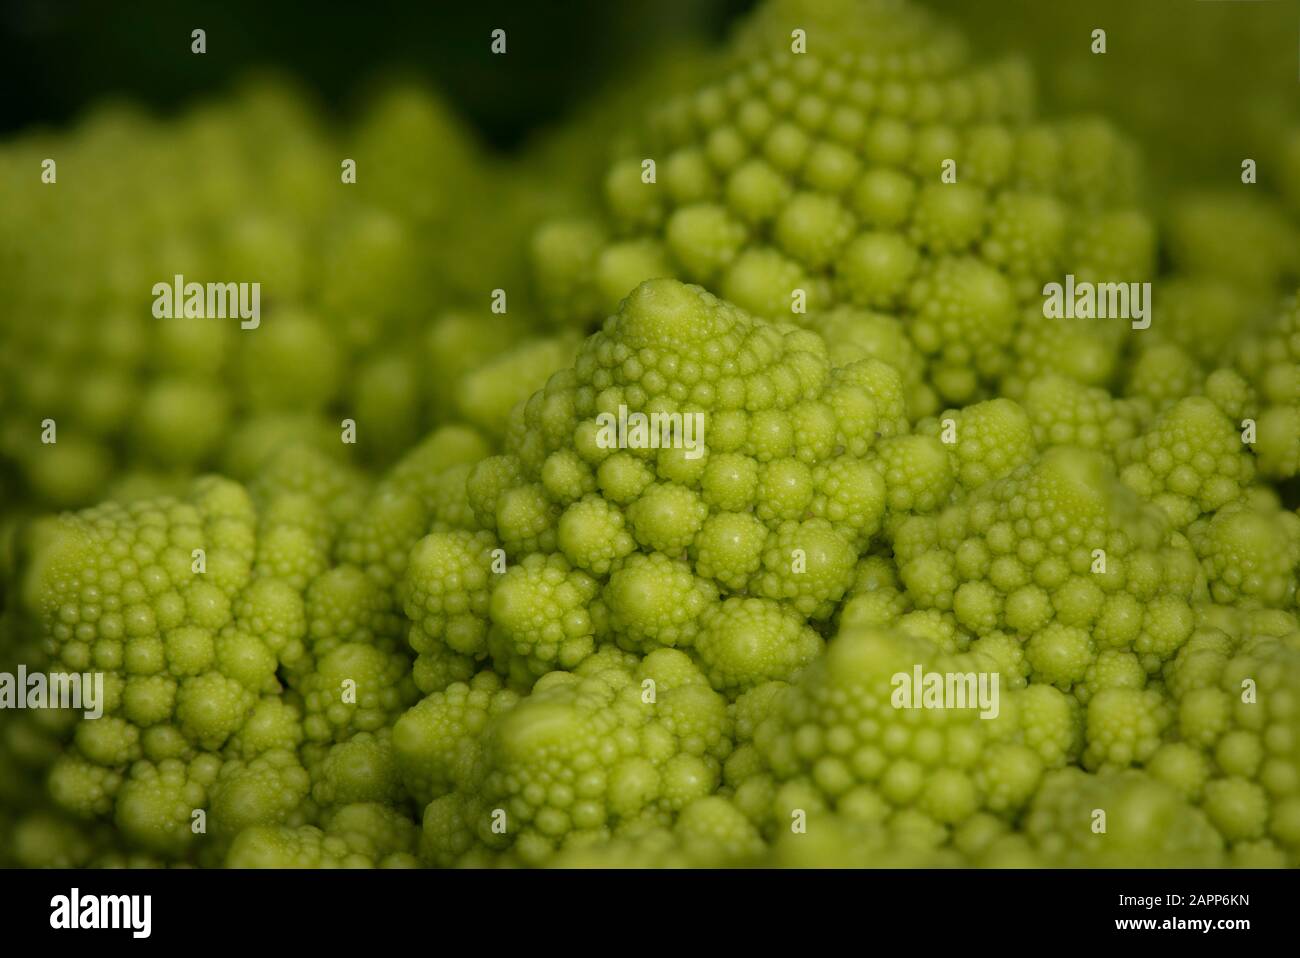 Fibonacci spiral visible in Romanesco broccoli, macro. Stock Photo